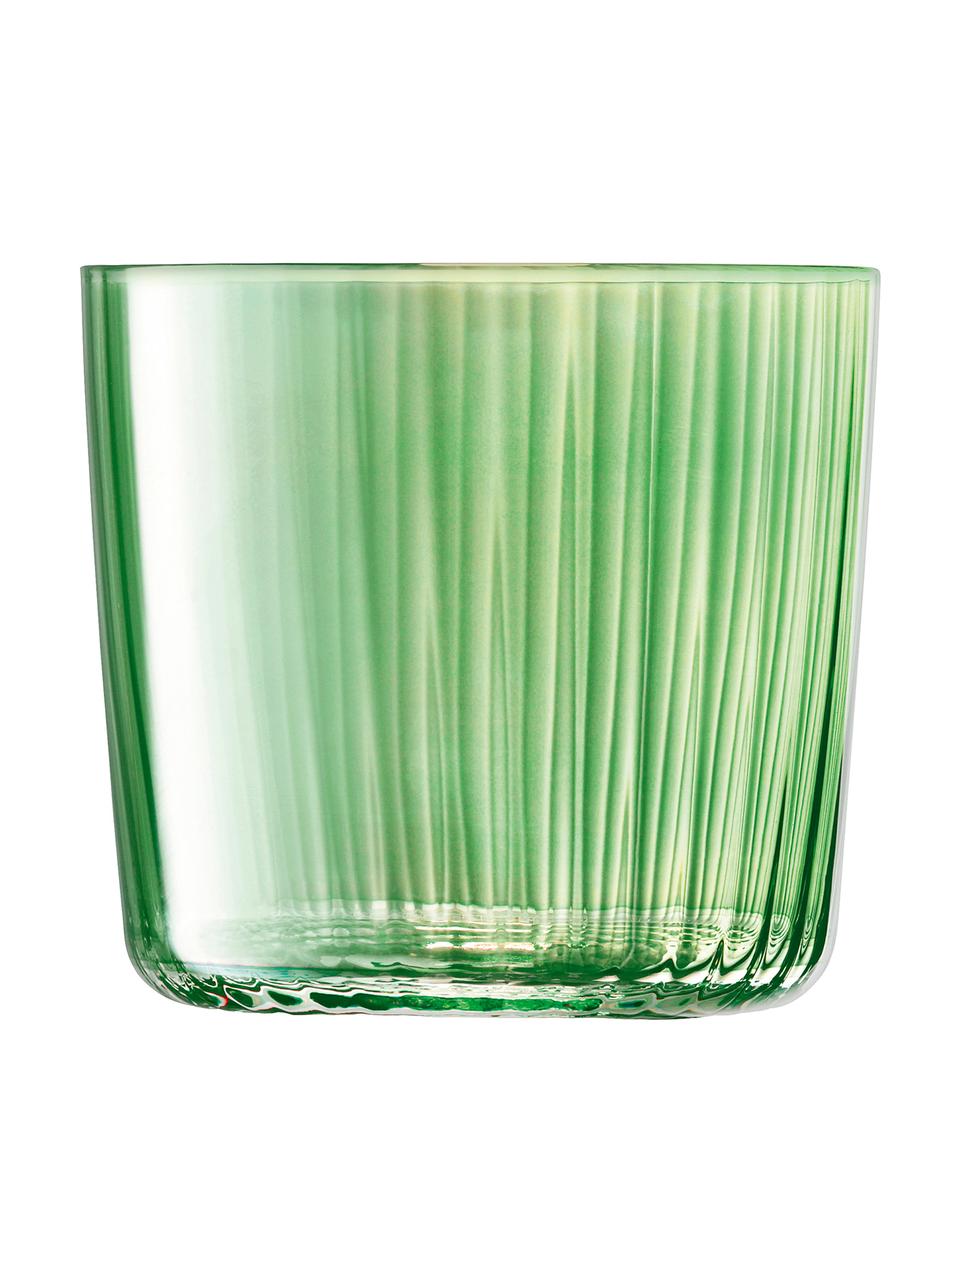 Sada ručně foukaných sklenic s reliéfem Gems, 4 díly, Odstíny zelené